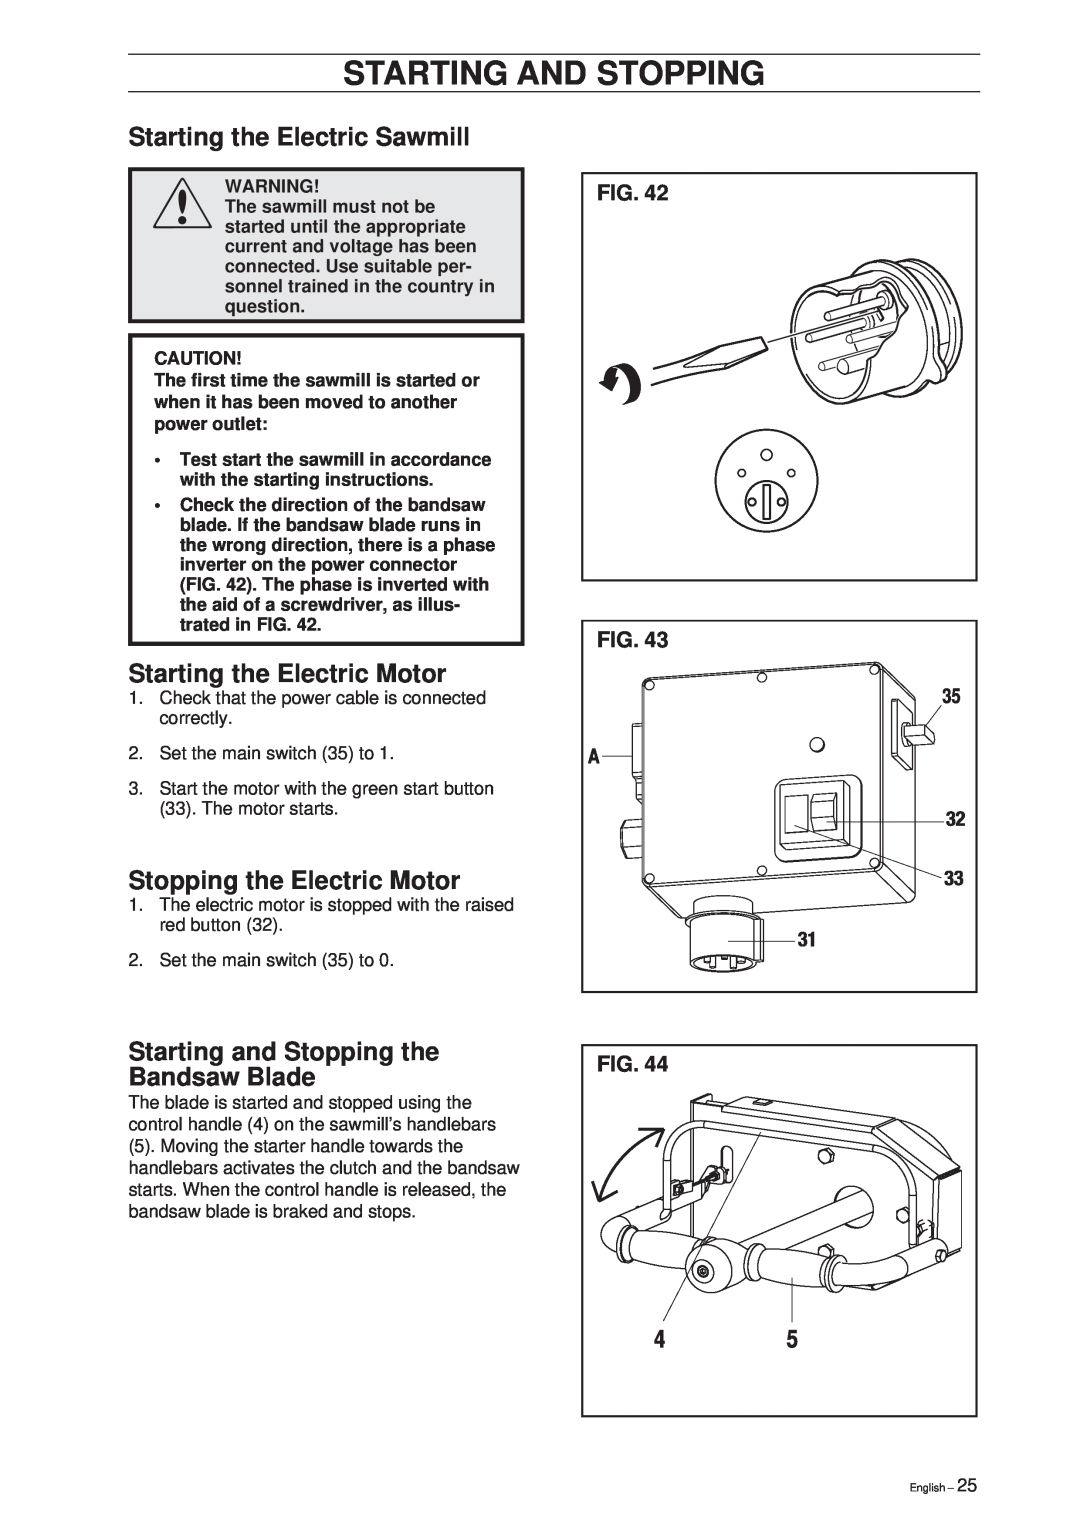 Husqvarna SMB 70, SMB 70 E manual Starting the Electric Sawmill, Starting the Electric Motor, Stopping the Electric Motor 